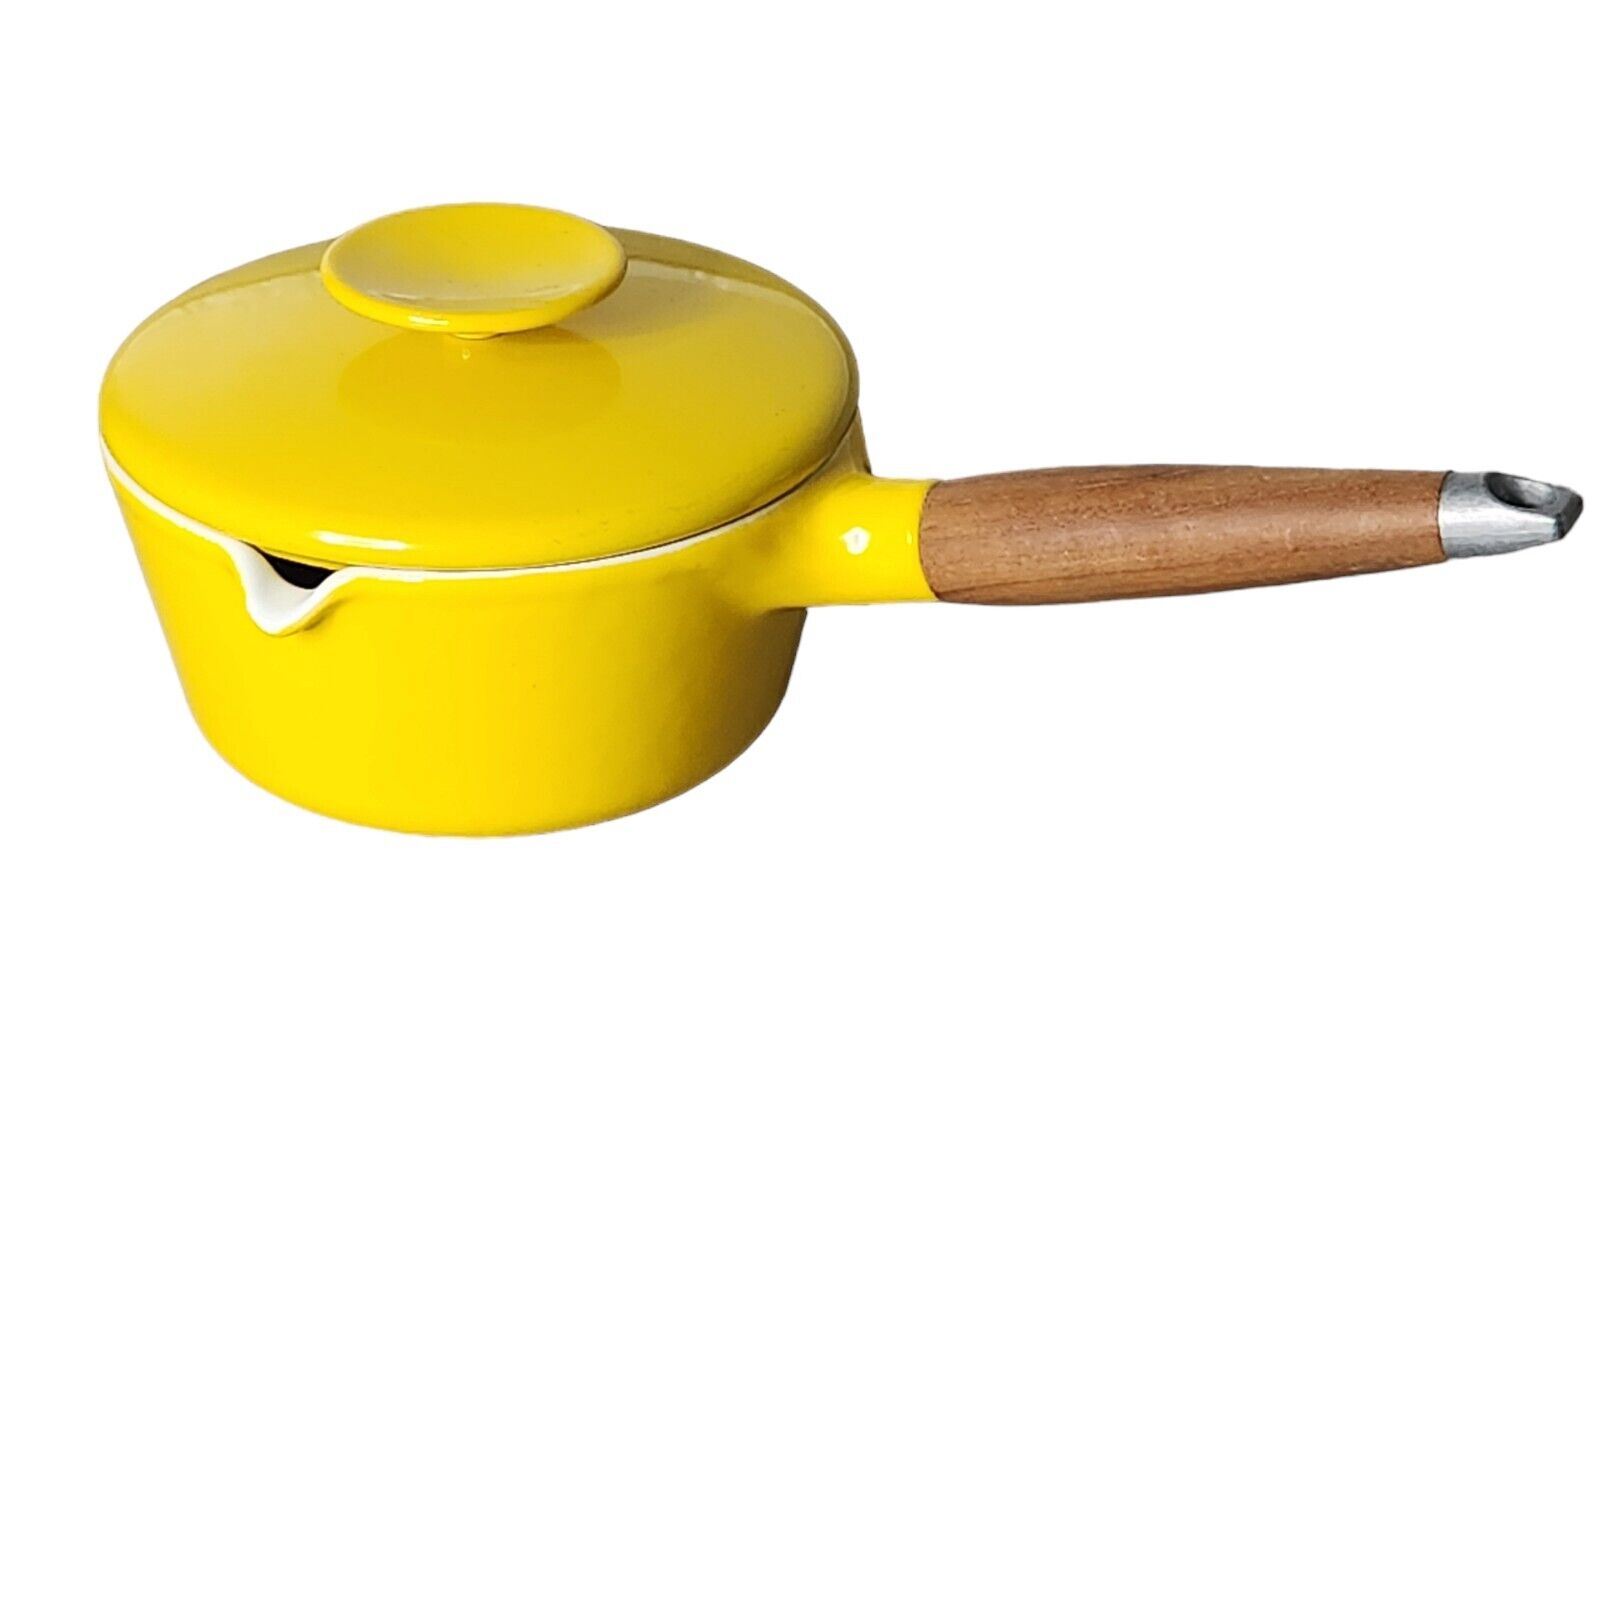 Copco Denmark Michael Lax Yellow Enamel Saucepan Spout with Lid Cast Iron 1.25qt